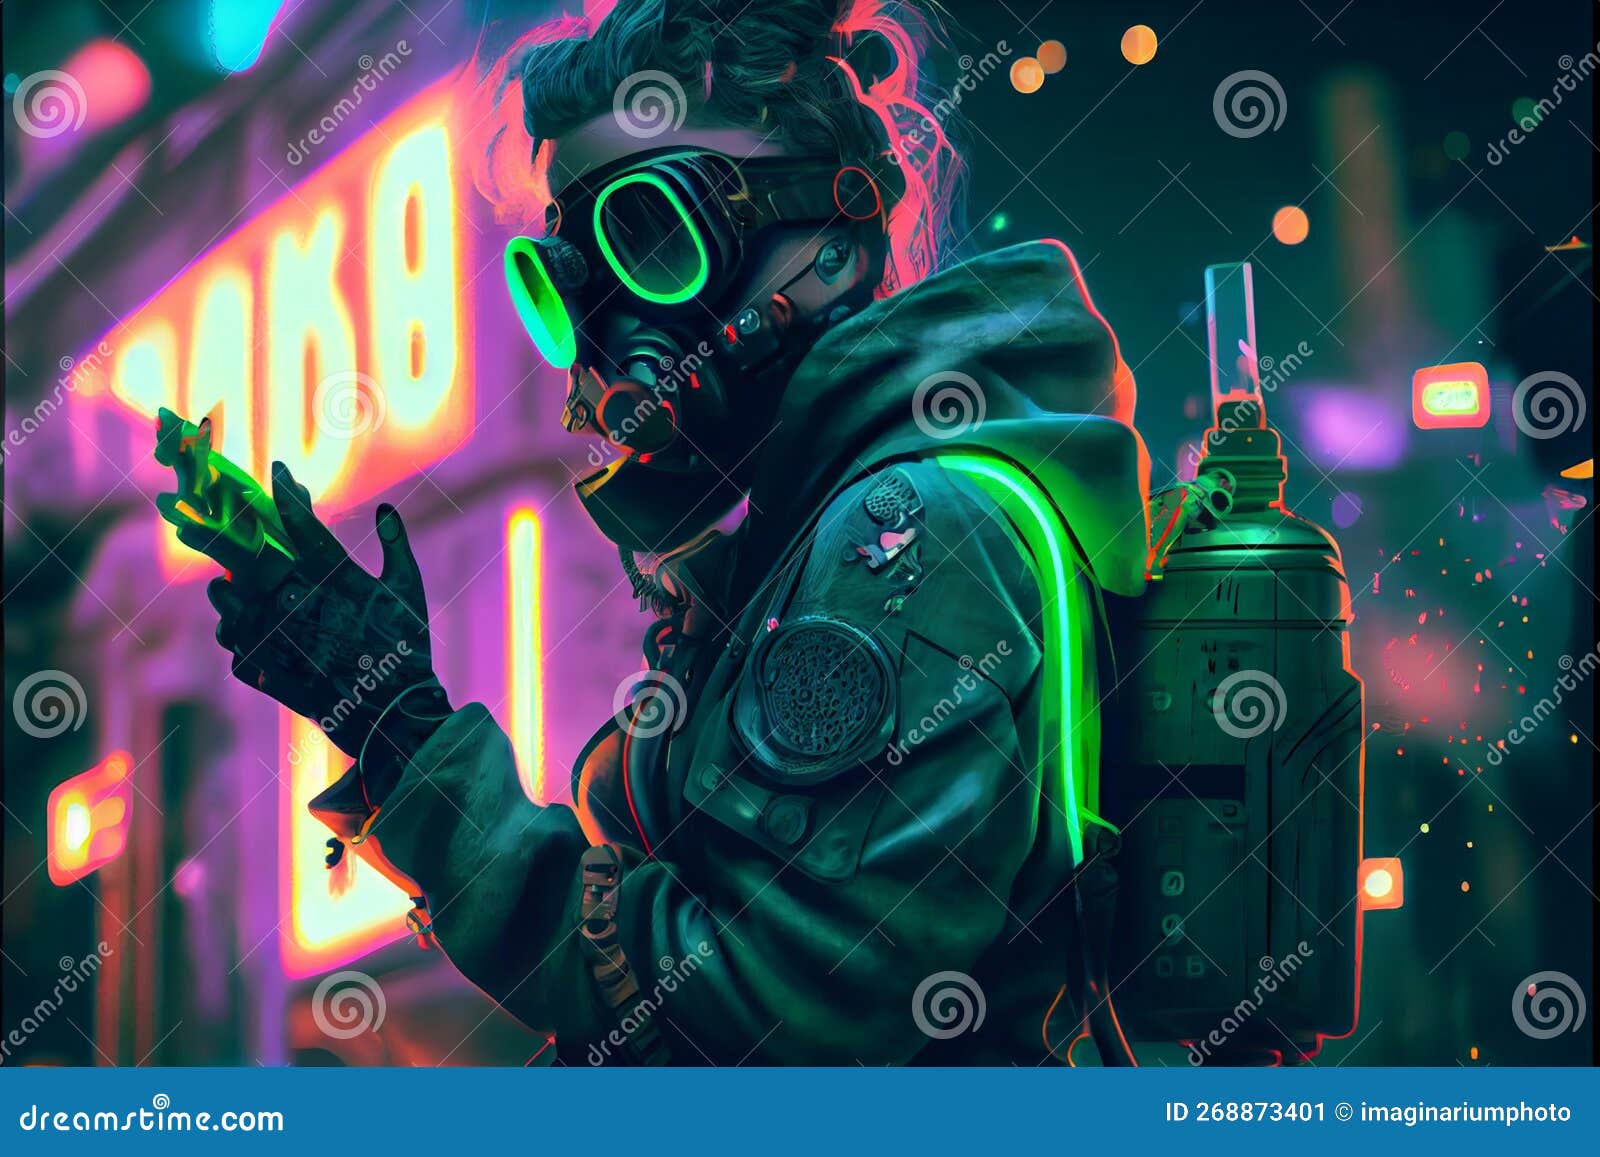 Ragazza Di Cyberpunk Con Maschera Futuristica a Gas Con Occhiali